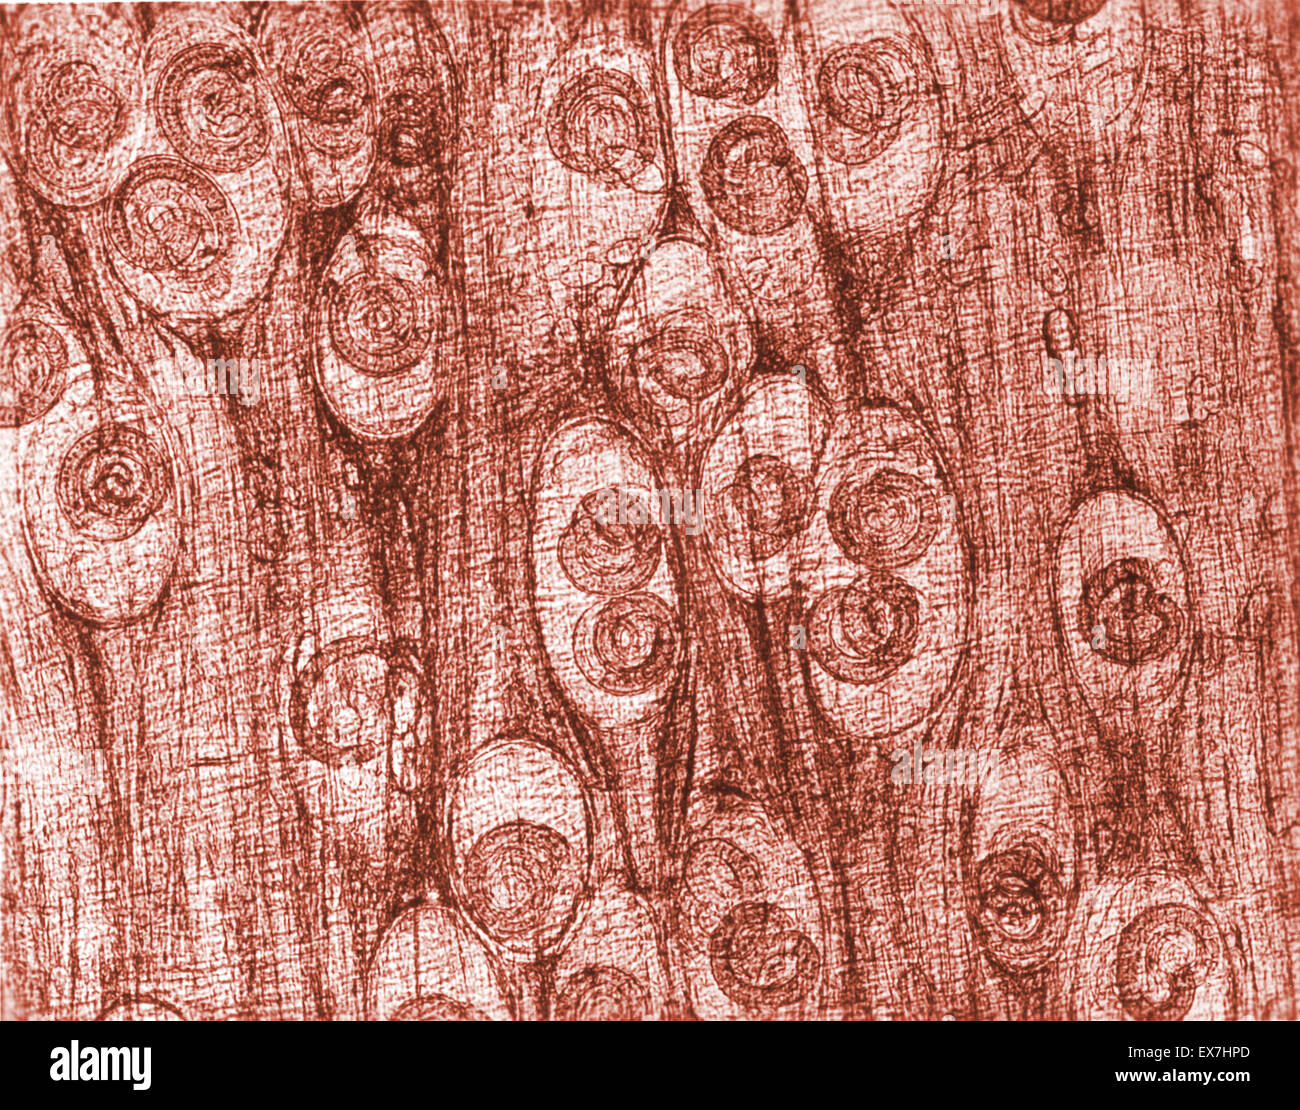 Mikrophotographie von Trichinella Spiralis Zysten gesehen eingebettet in einen Muskel Gewebeprobe Stockfoto